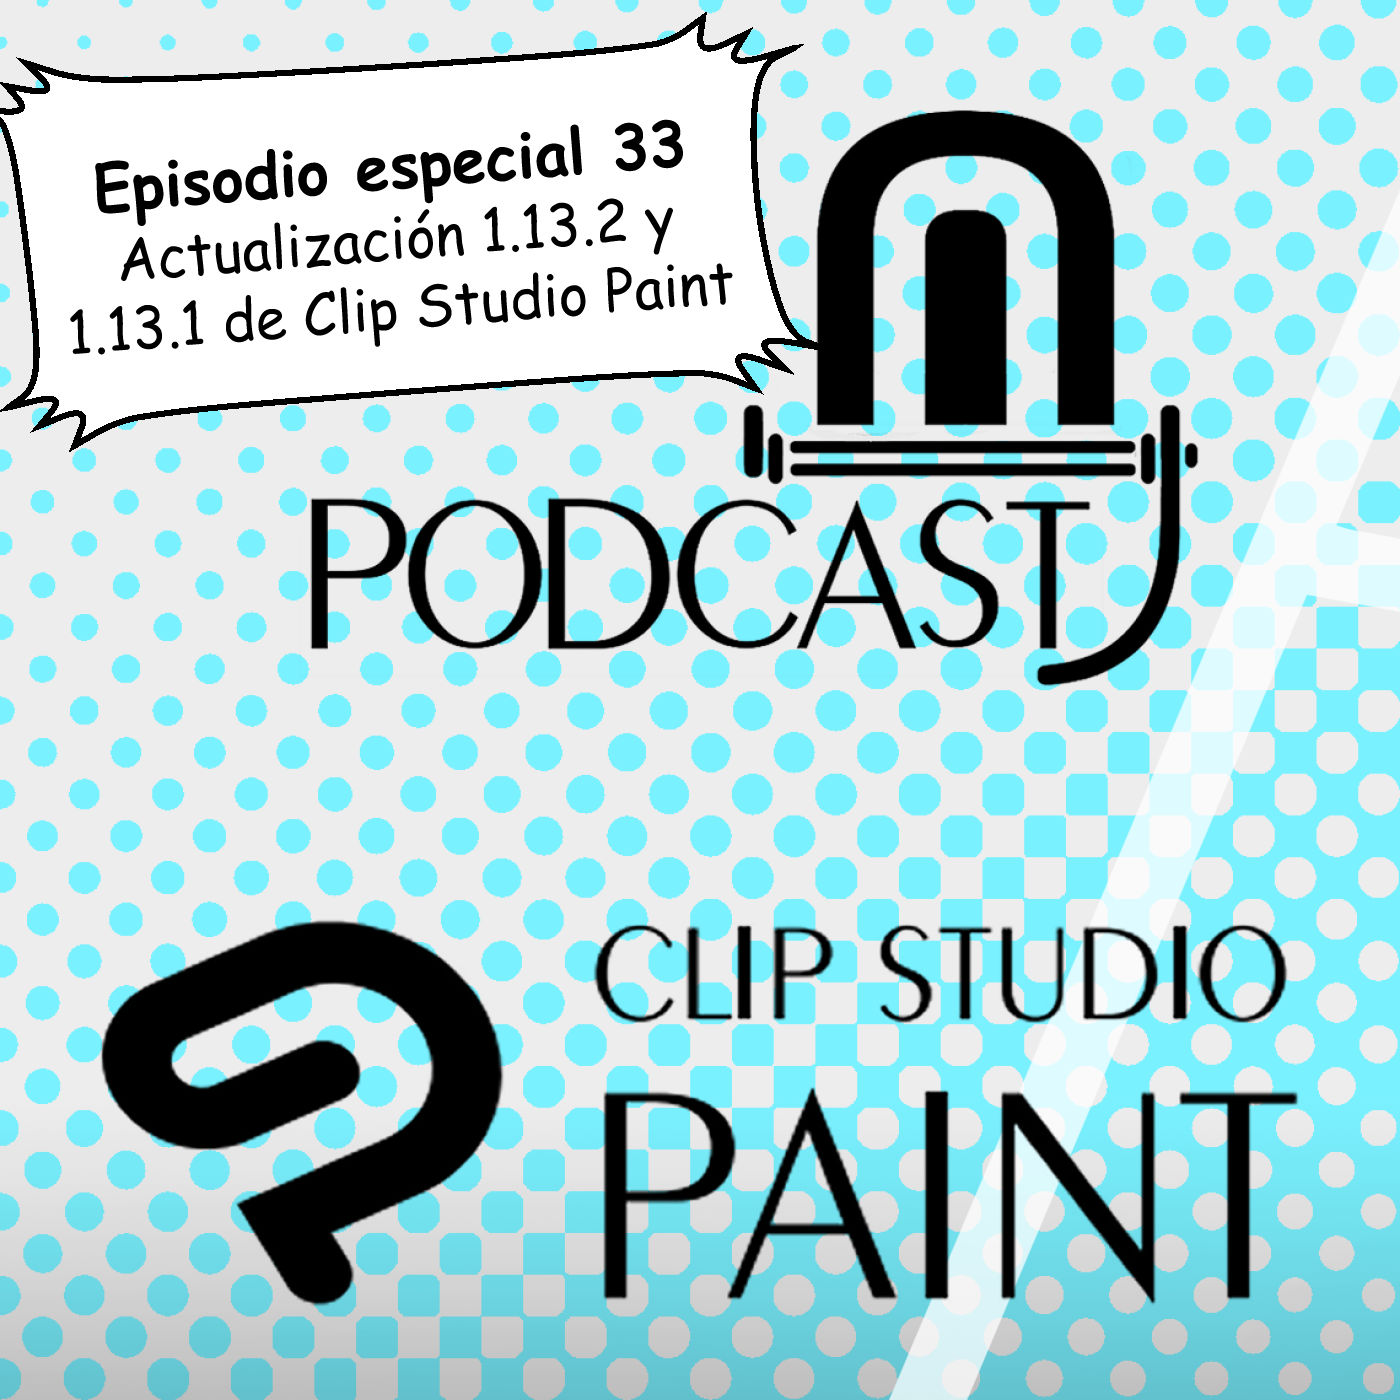 CSP especial 33. Actualización 1.13.2 y 1.13.1 de Clip Studio Paint